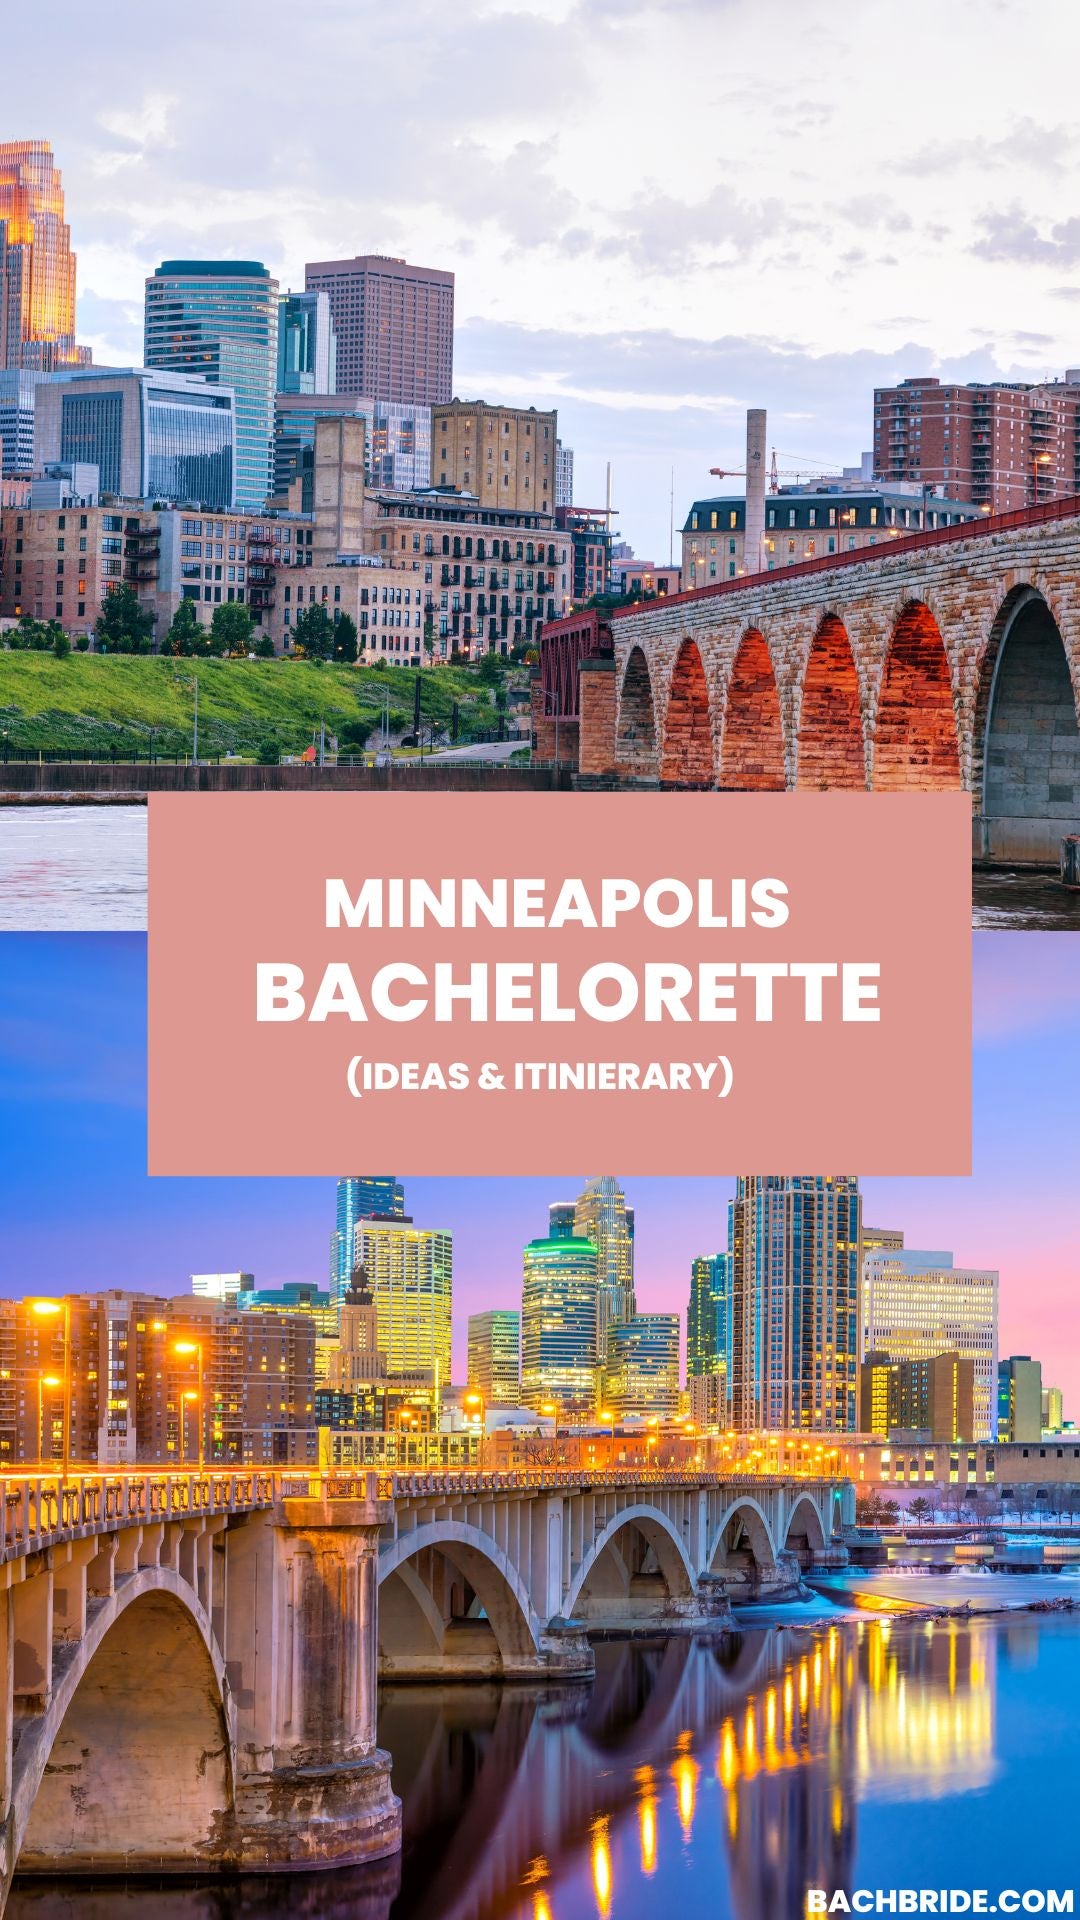 Bachelorette Party Minneapolis